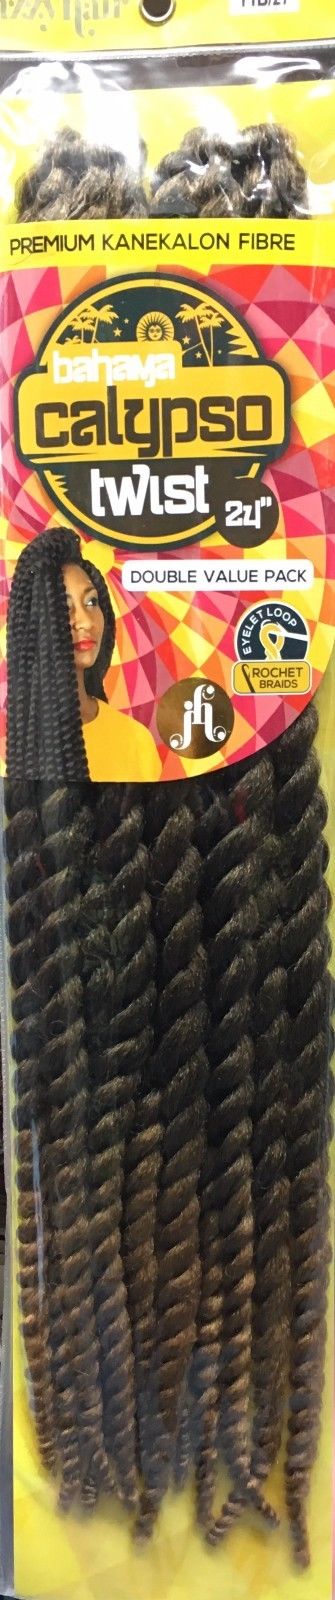 Jazzy Hair Twist Calypso Havana Twist Crochet Braid 24''